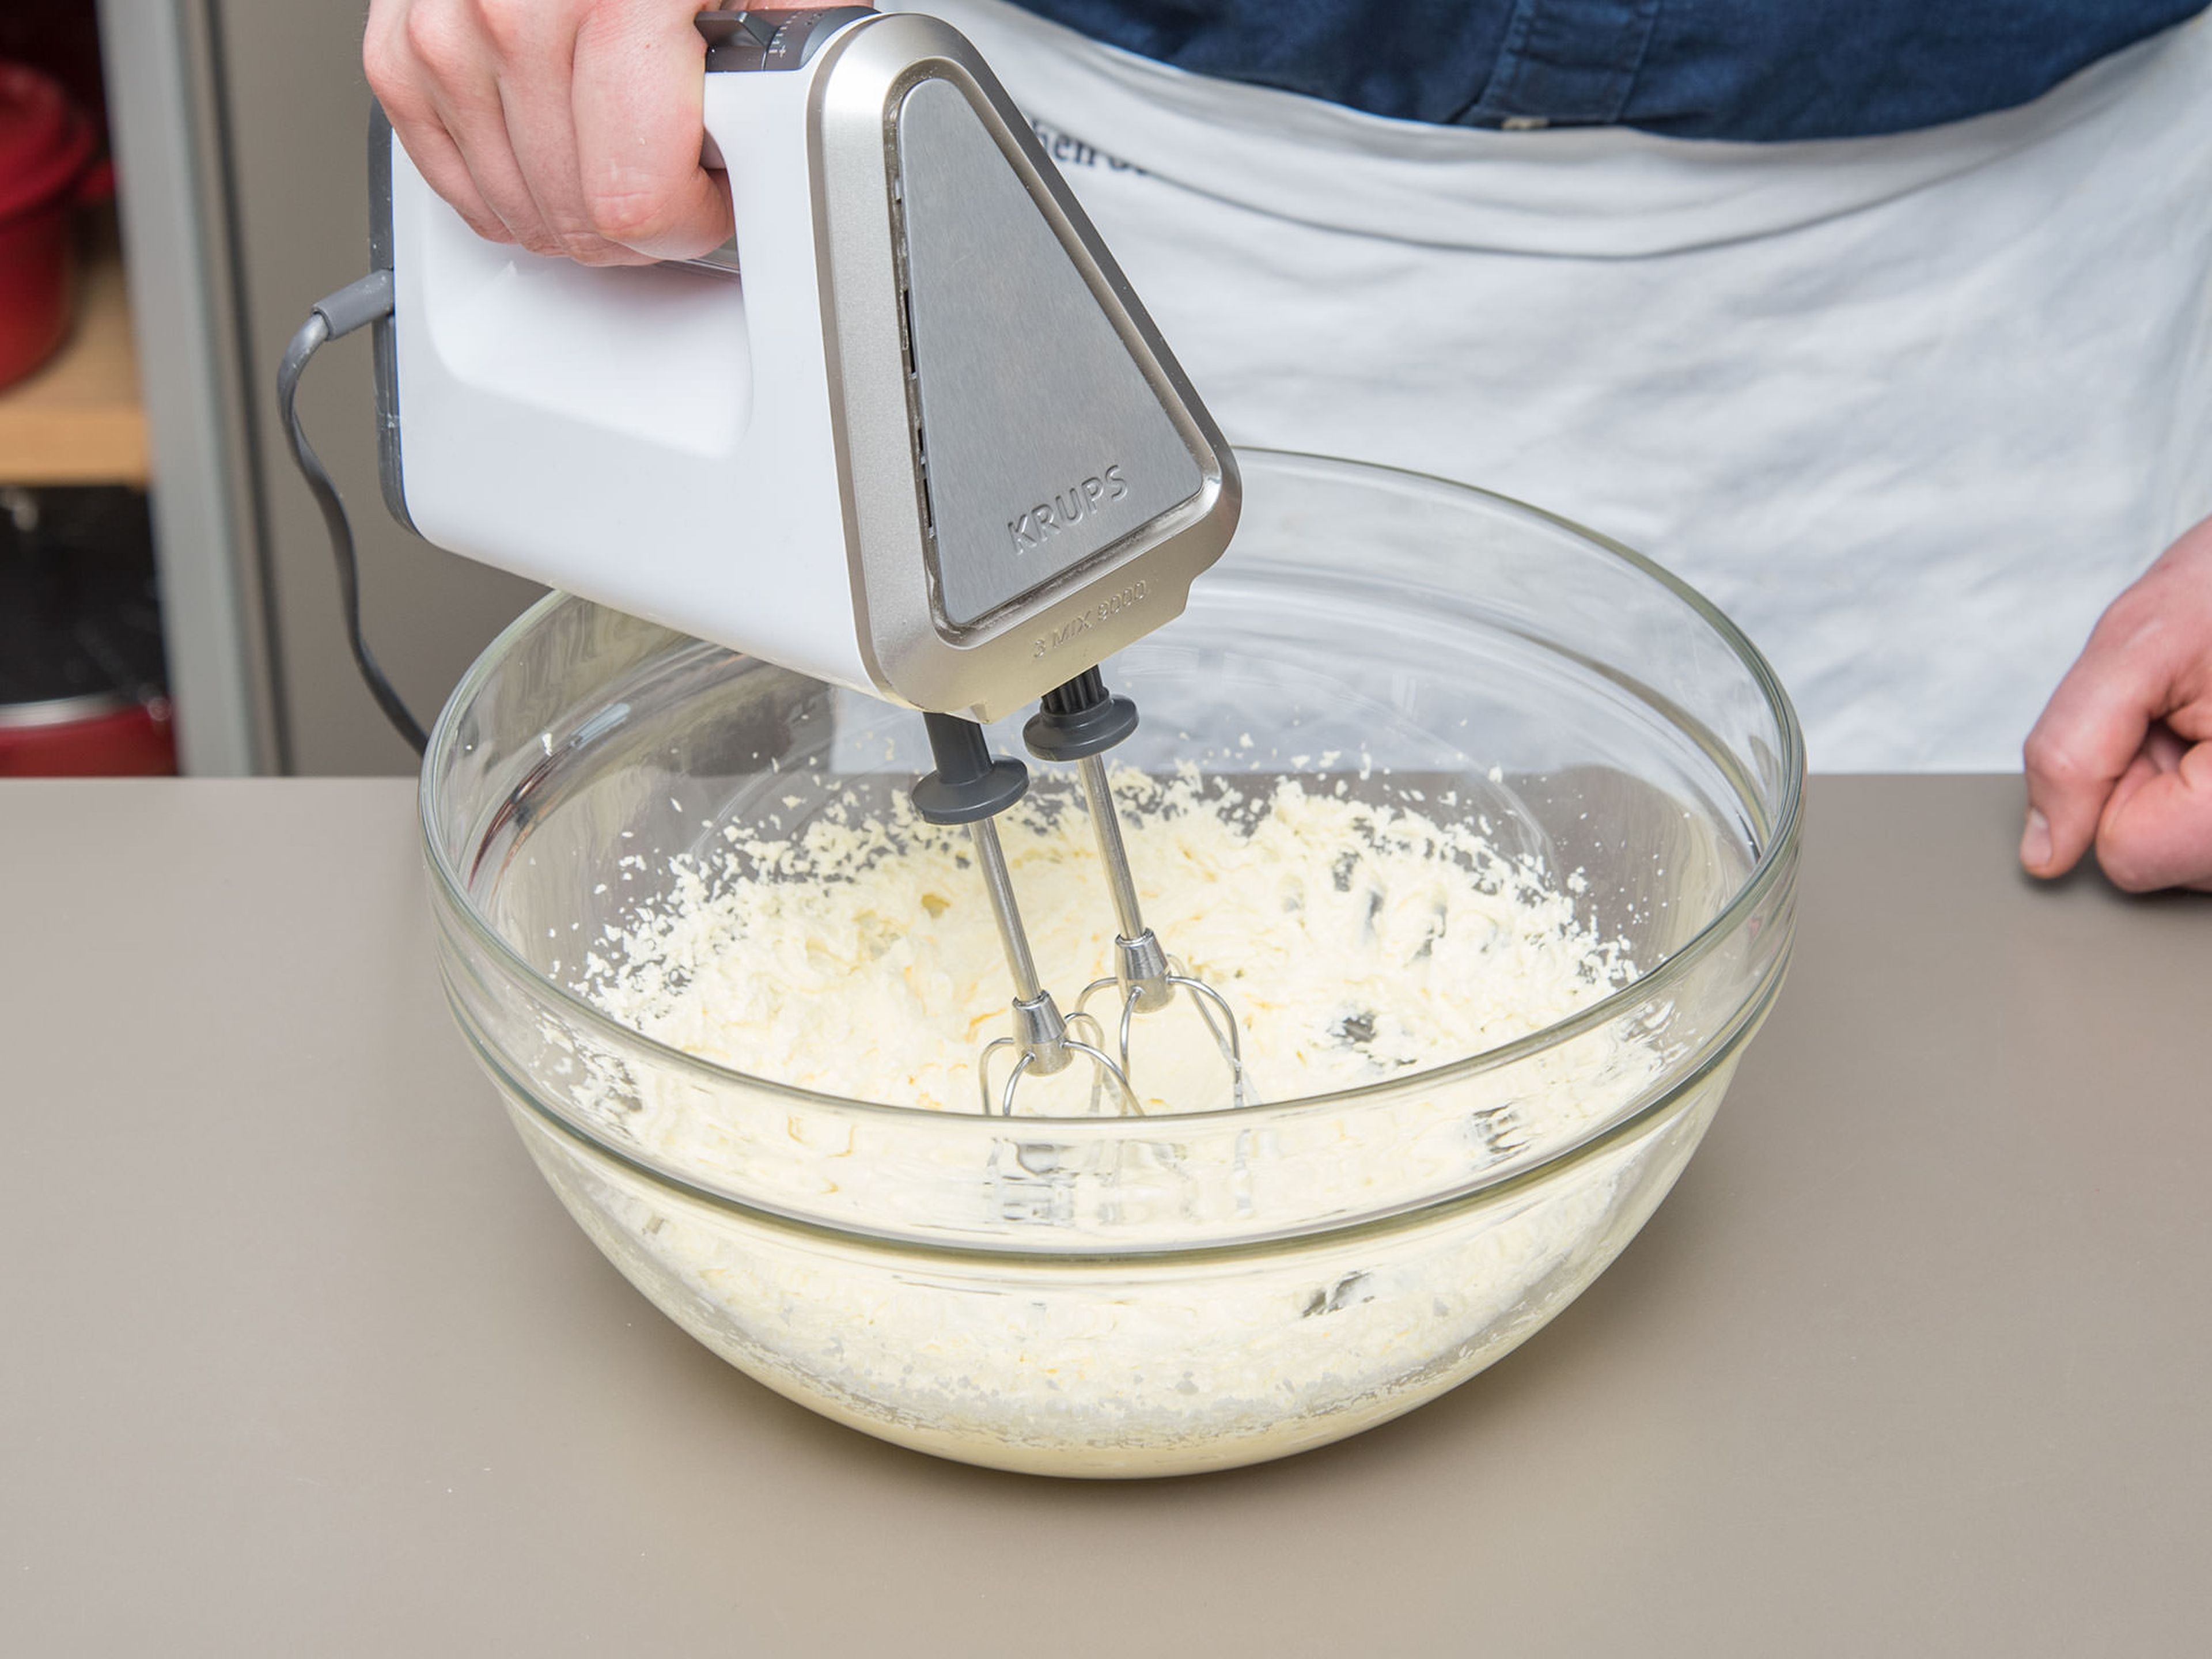 Backofen auf 175°C vorheizen. Butter in einer Schüssel schaumig schlagen. Braunen und weißen Zucker langsam einrieseln lassen. Honig und Eier dazugeben und vermengen. Vanilleextrakt, Instant-Espressopulver und Salz dazugeben.